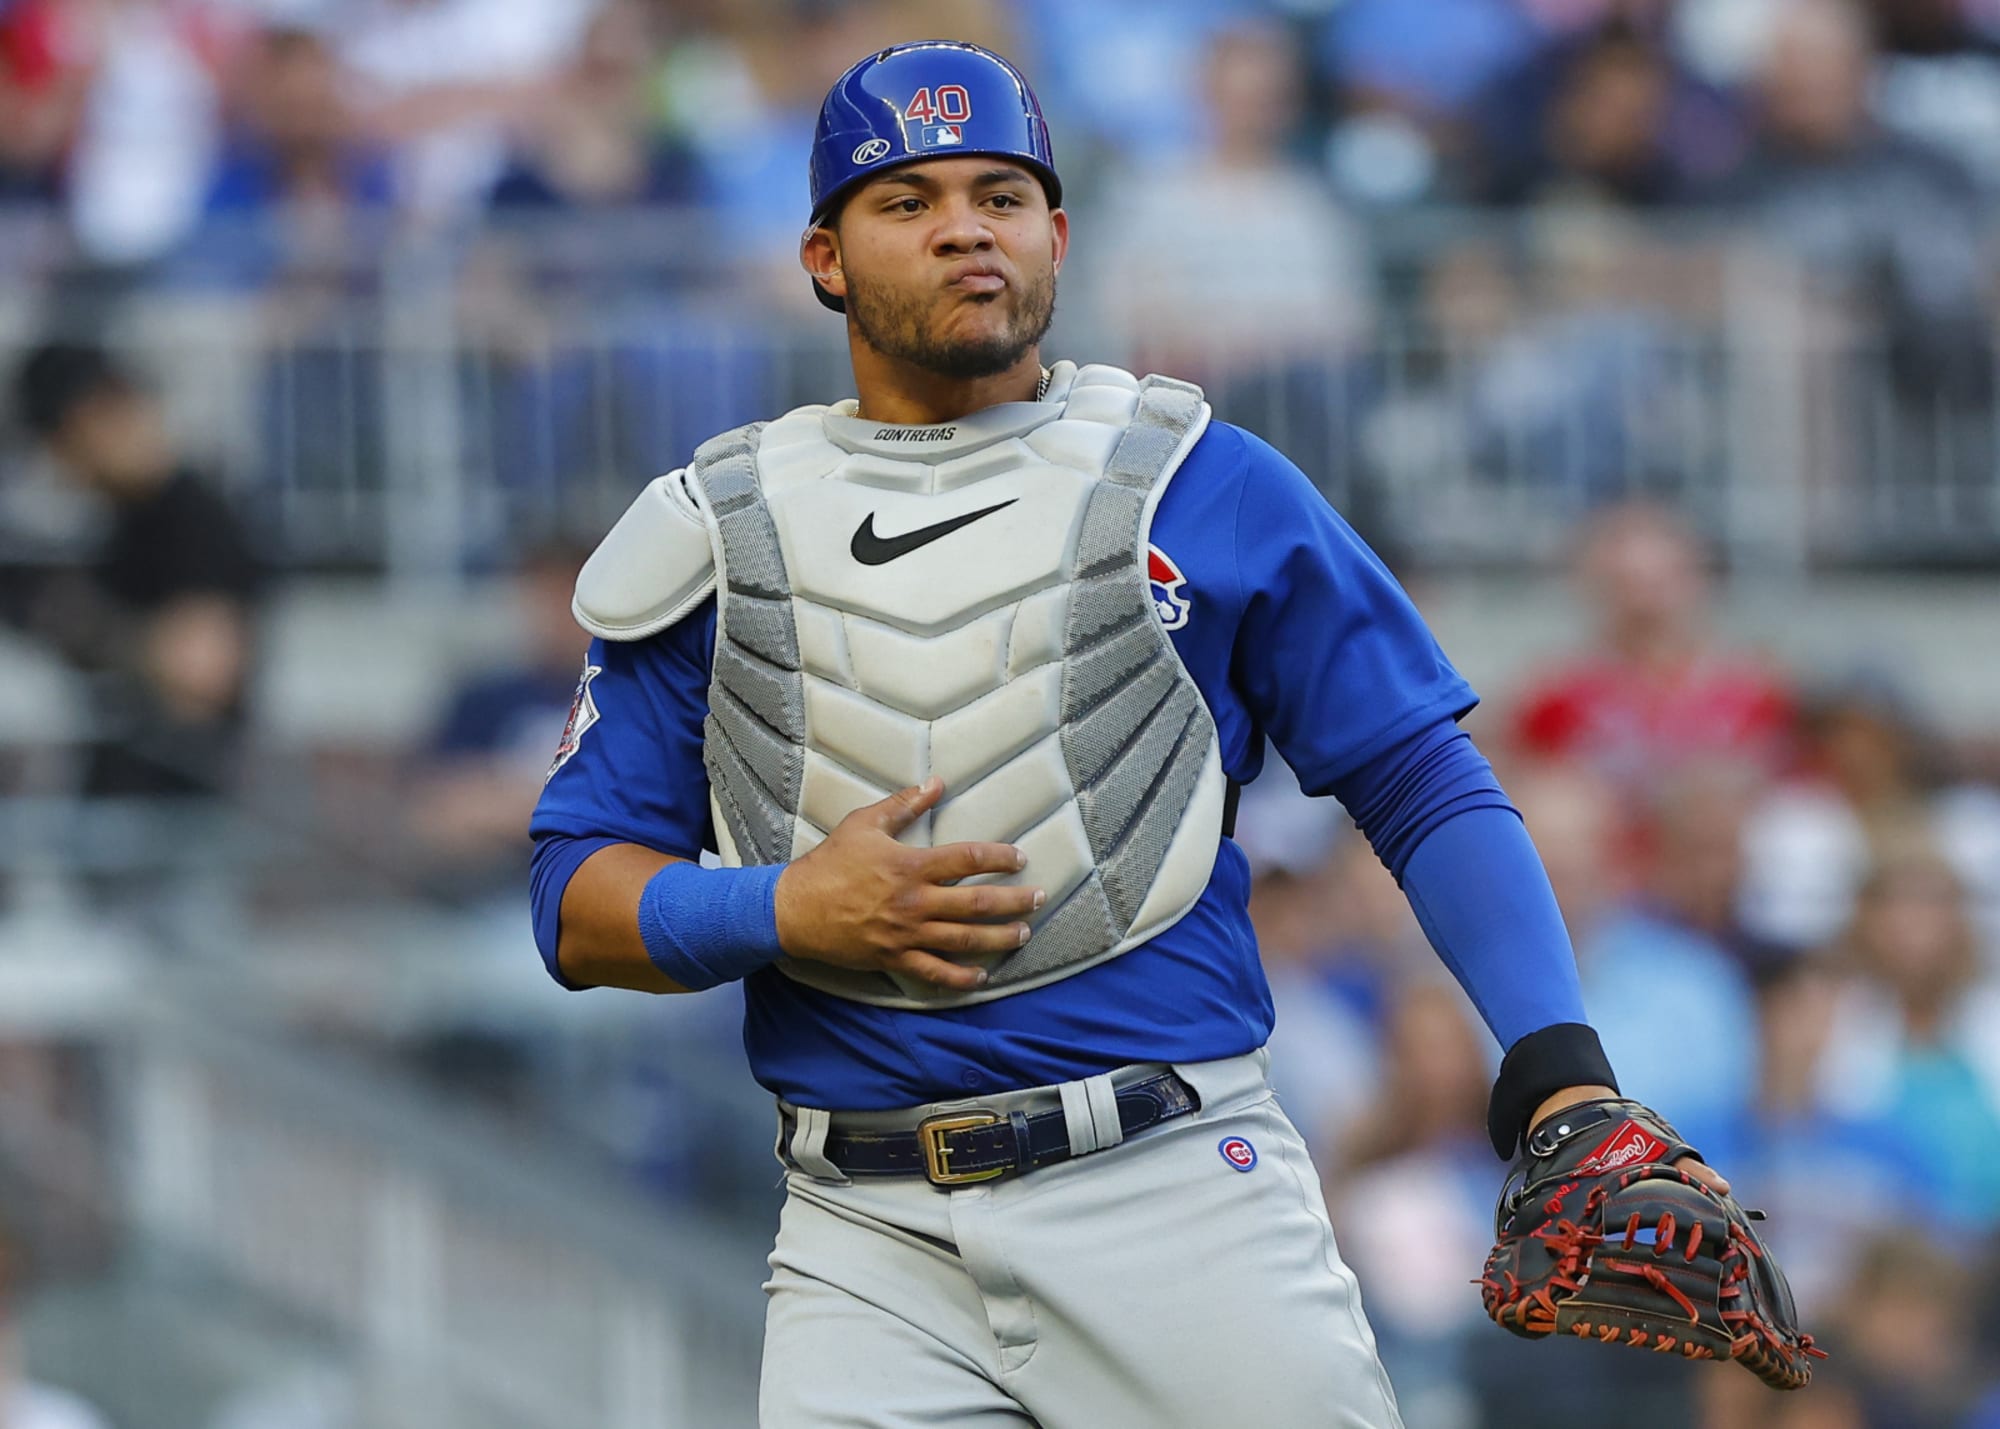 Cubs: Willson Contreras’ bat spike deserves a spot in Cooperstown